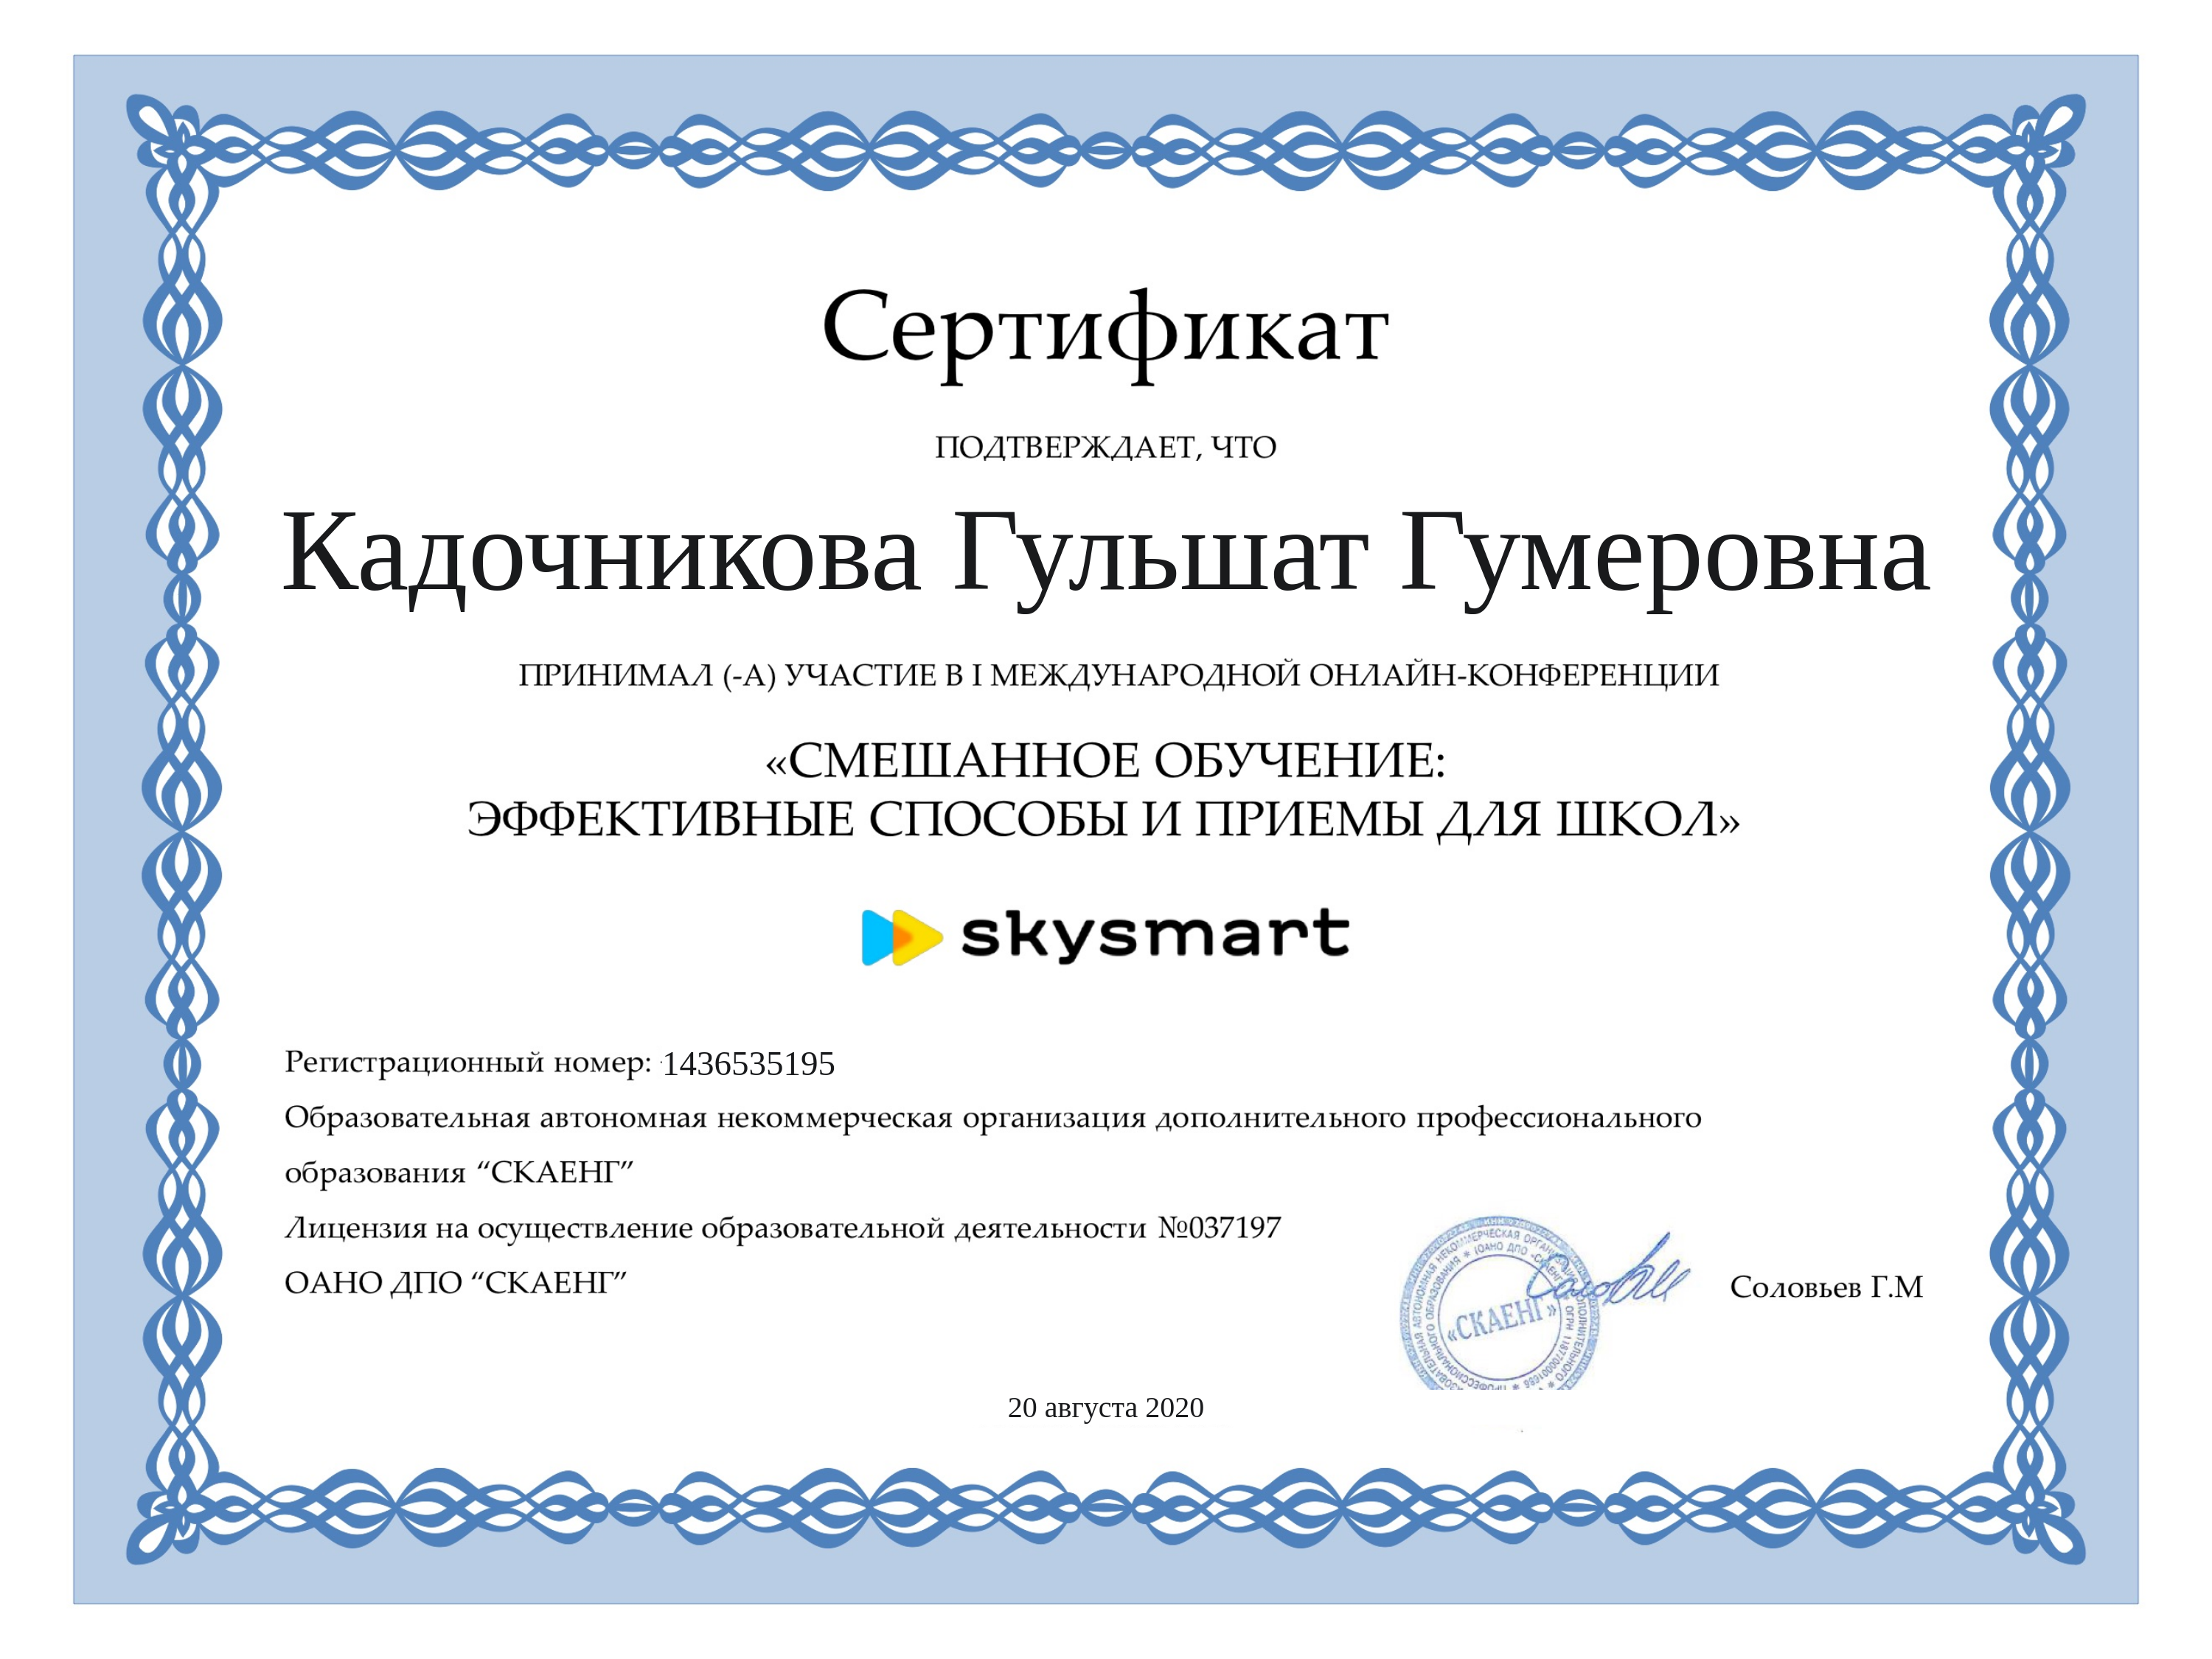 Сертификат вебинара. Сертификат учителю. Сертификат об участии в вебинаре. Сертификаты вебинаров для учителей начальных классов.